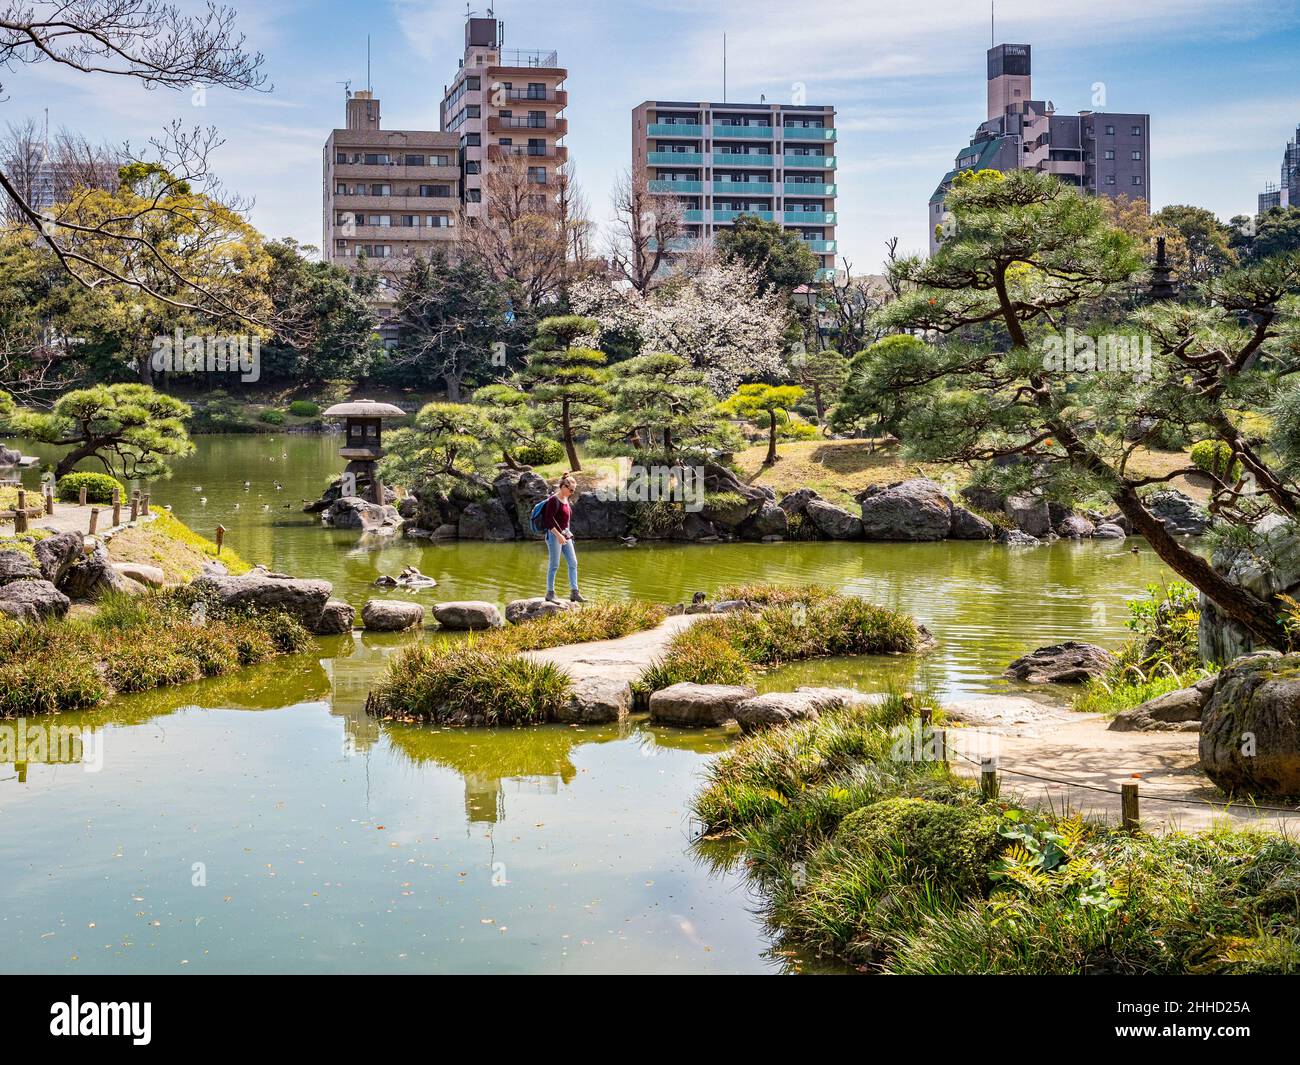 5 aprile 2019: Tokyo, Giappone - giovane donna che attraversa il lago nei giardini Kyu-Shiba-rikyu, un giardino paesaggistico in stile tradizionale nel centro di Tokyo. Foto Stock